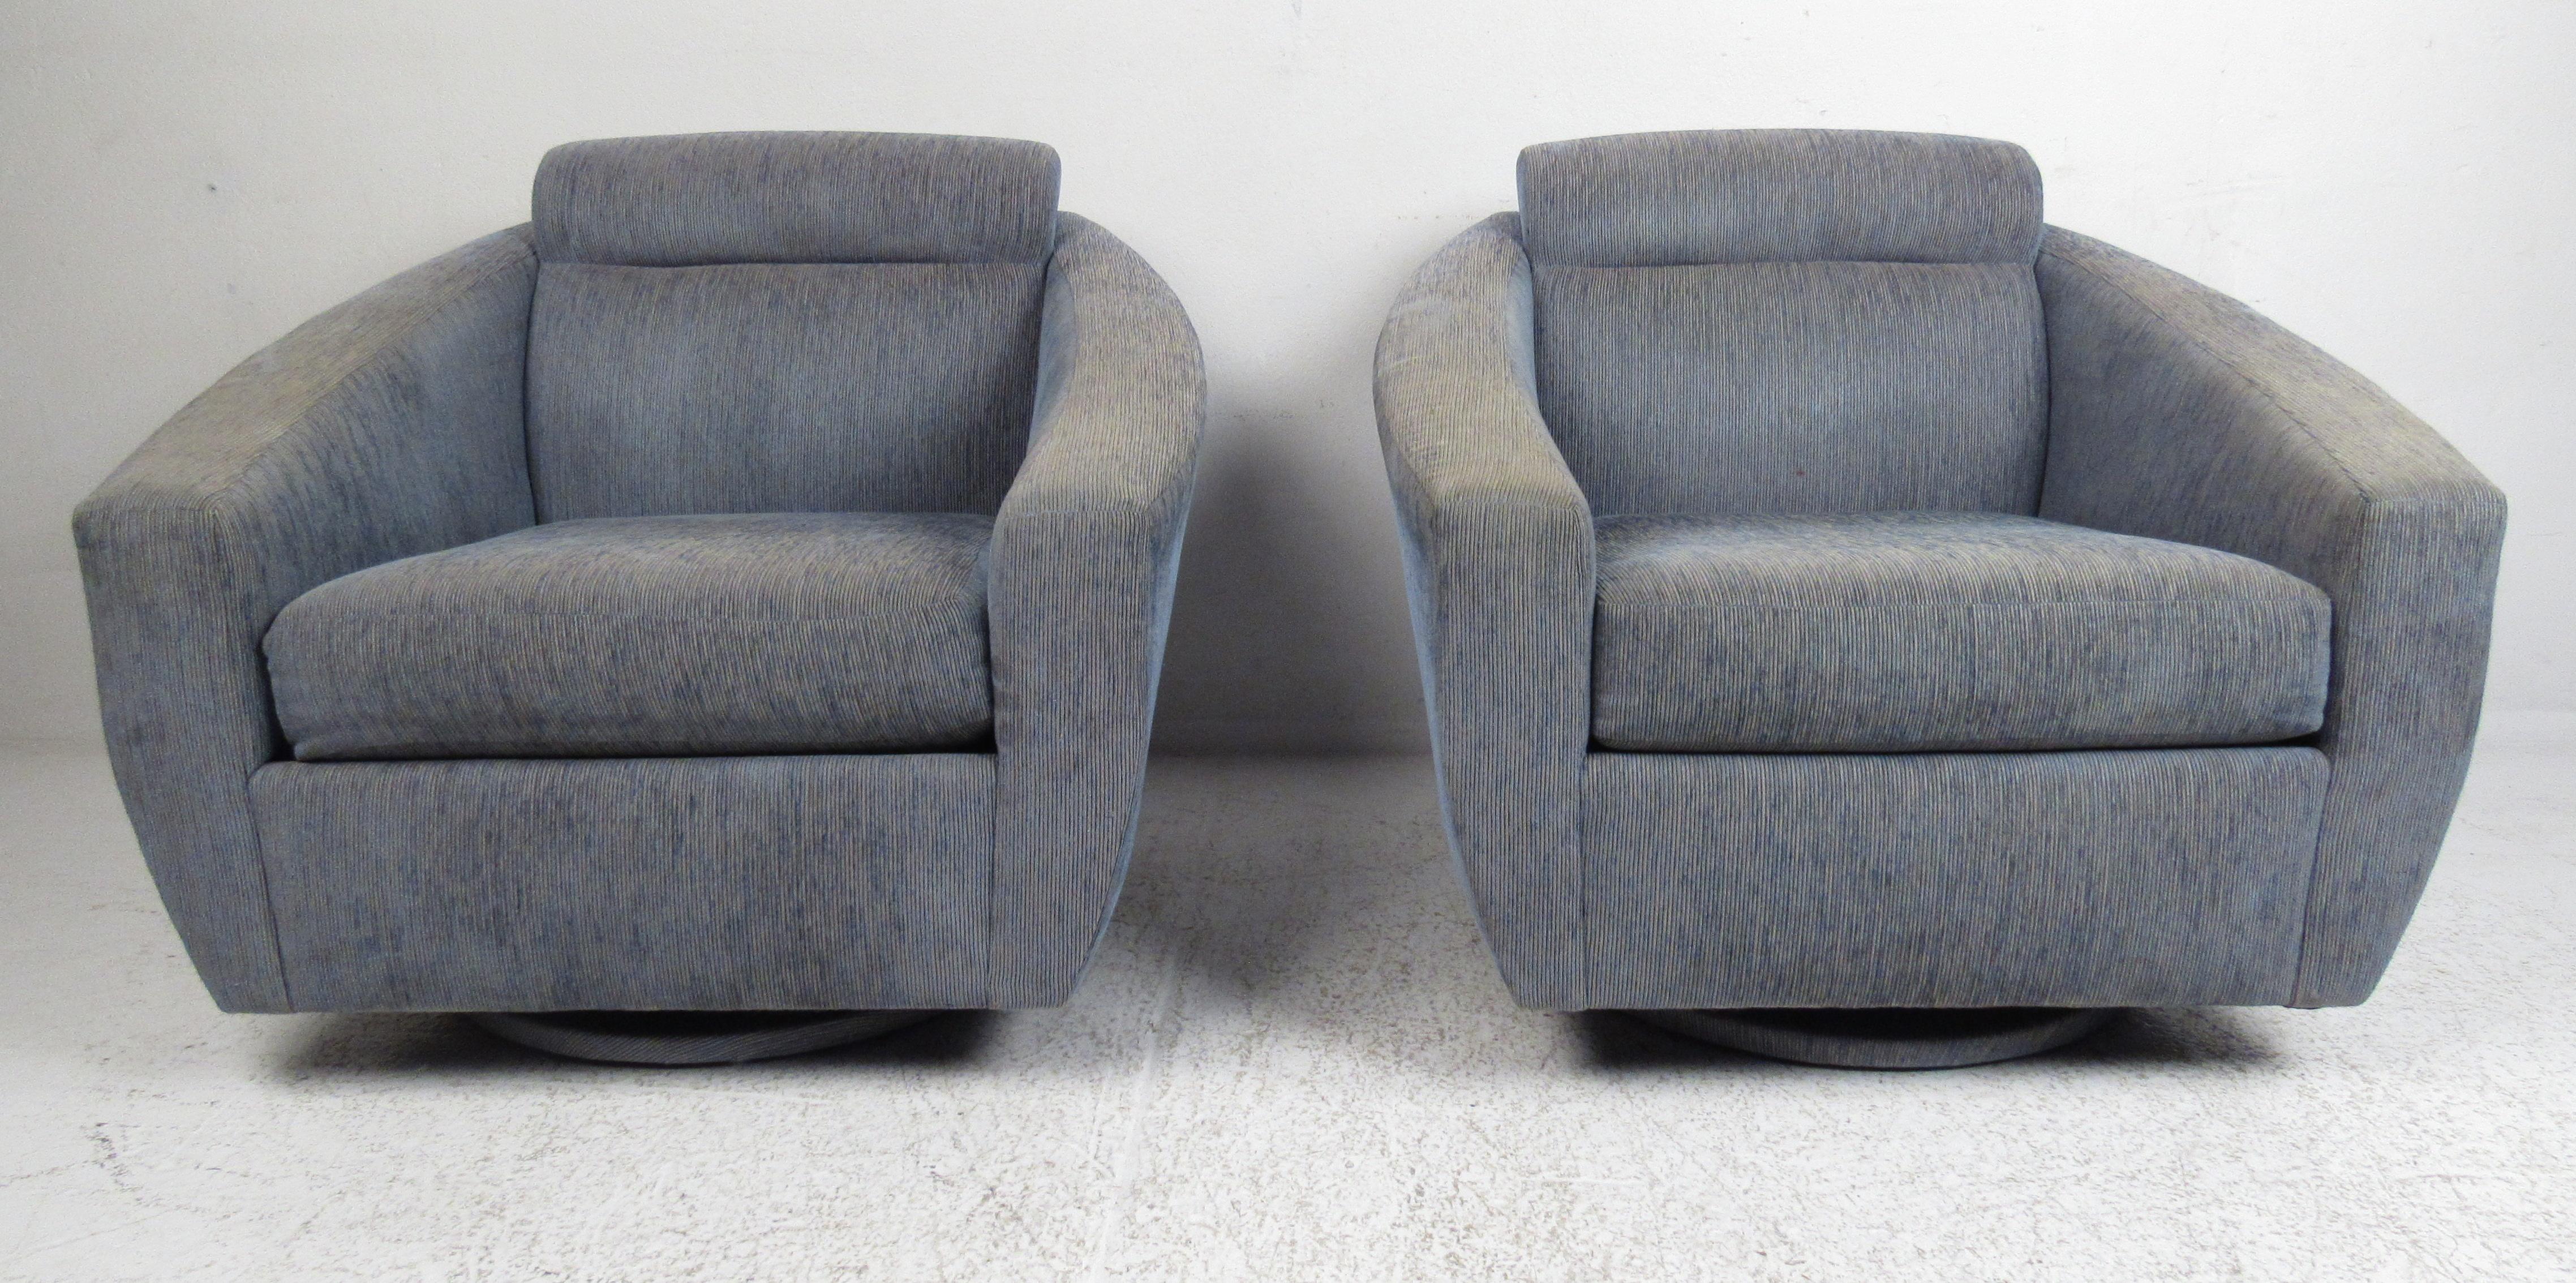 Paire de chaises longues surdimensionnées de style moderne avec base pivotante et inclinable. Veuillez confirmer la localisation de l'article (NY ou NJ) auprès du revendeur.